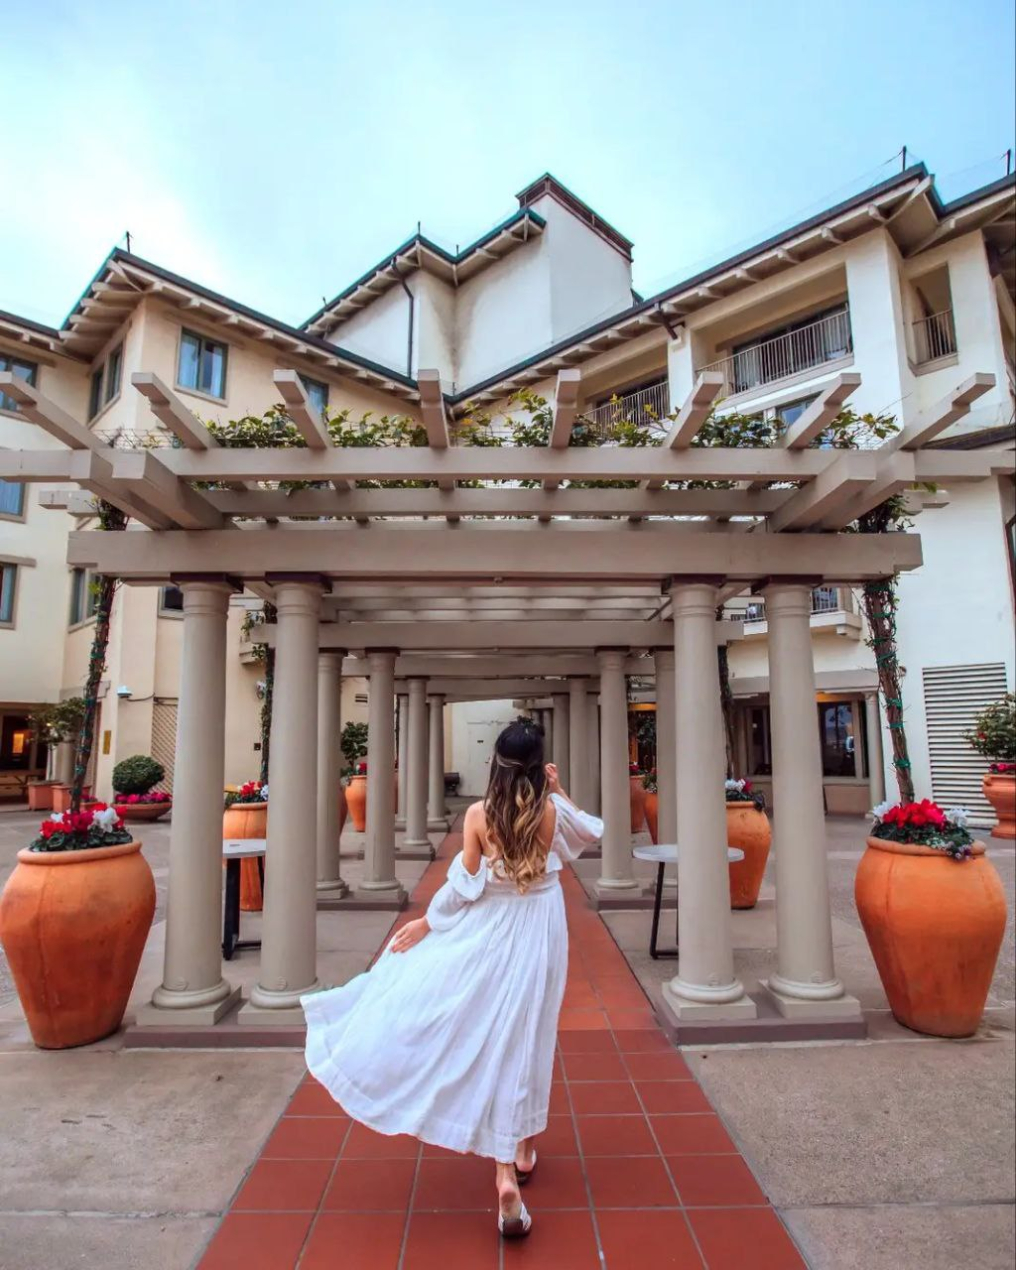 Monterey Plaza Hotel & Spa Venue photo